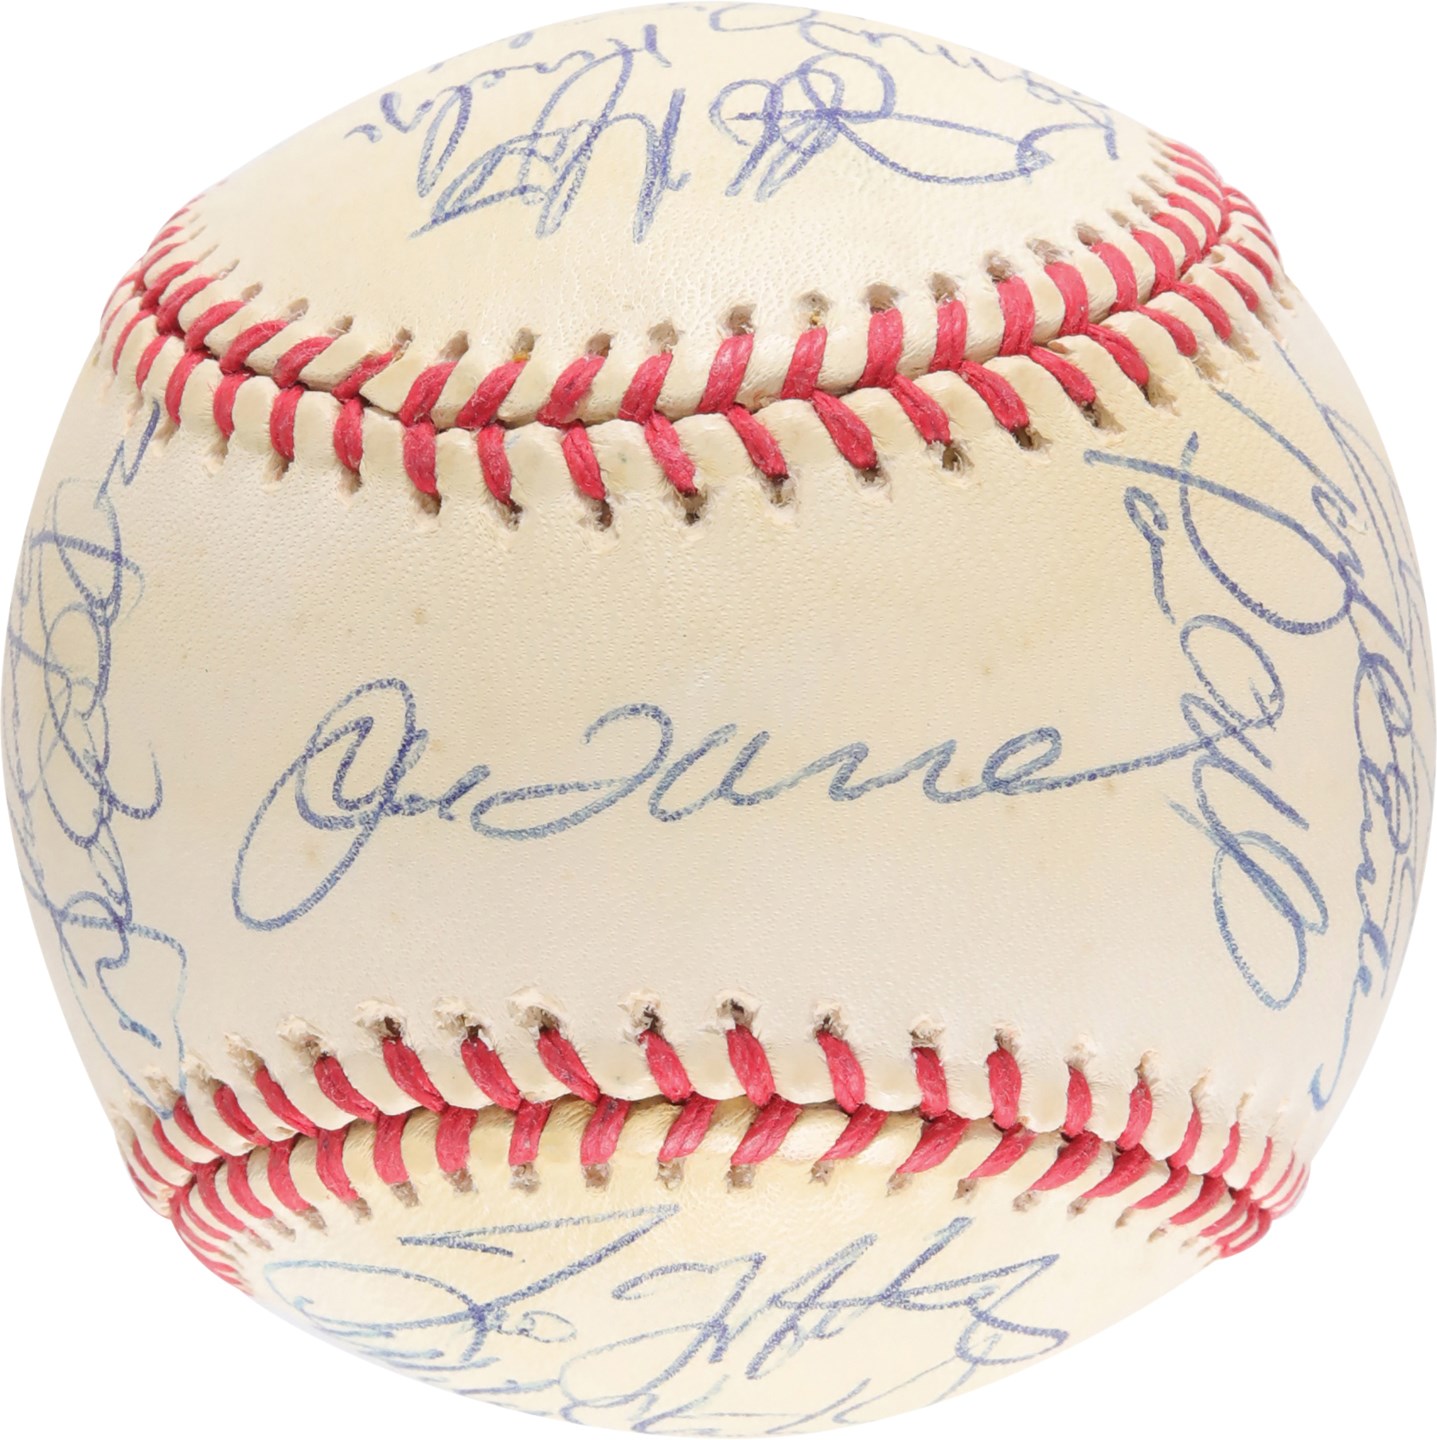 Baseball Autographs - 1999 World Champion New York Yankees Team-Signed Baseball w/Jeter & Steinbrenner (JSA)